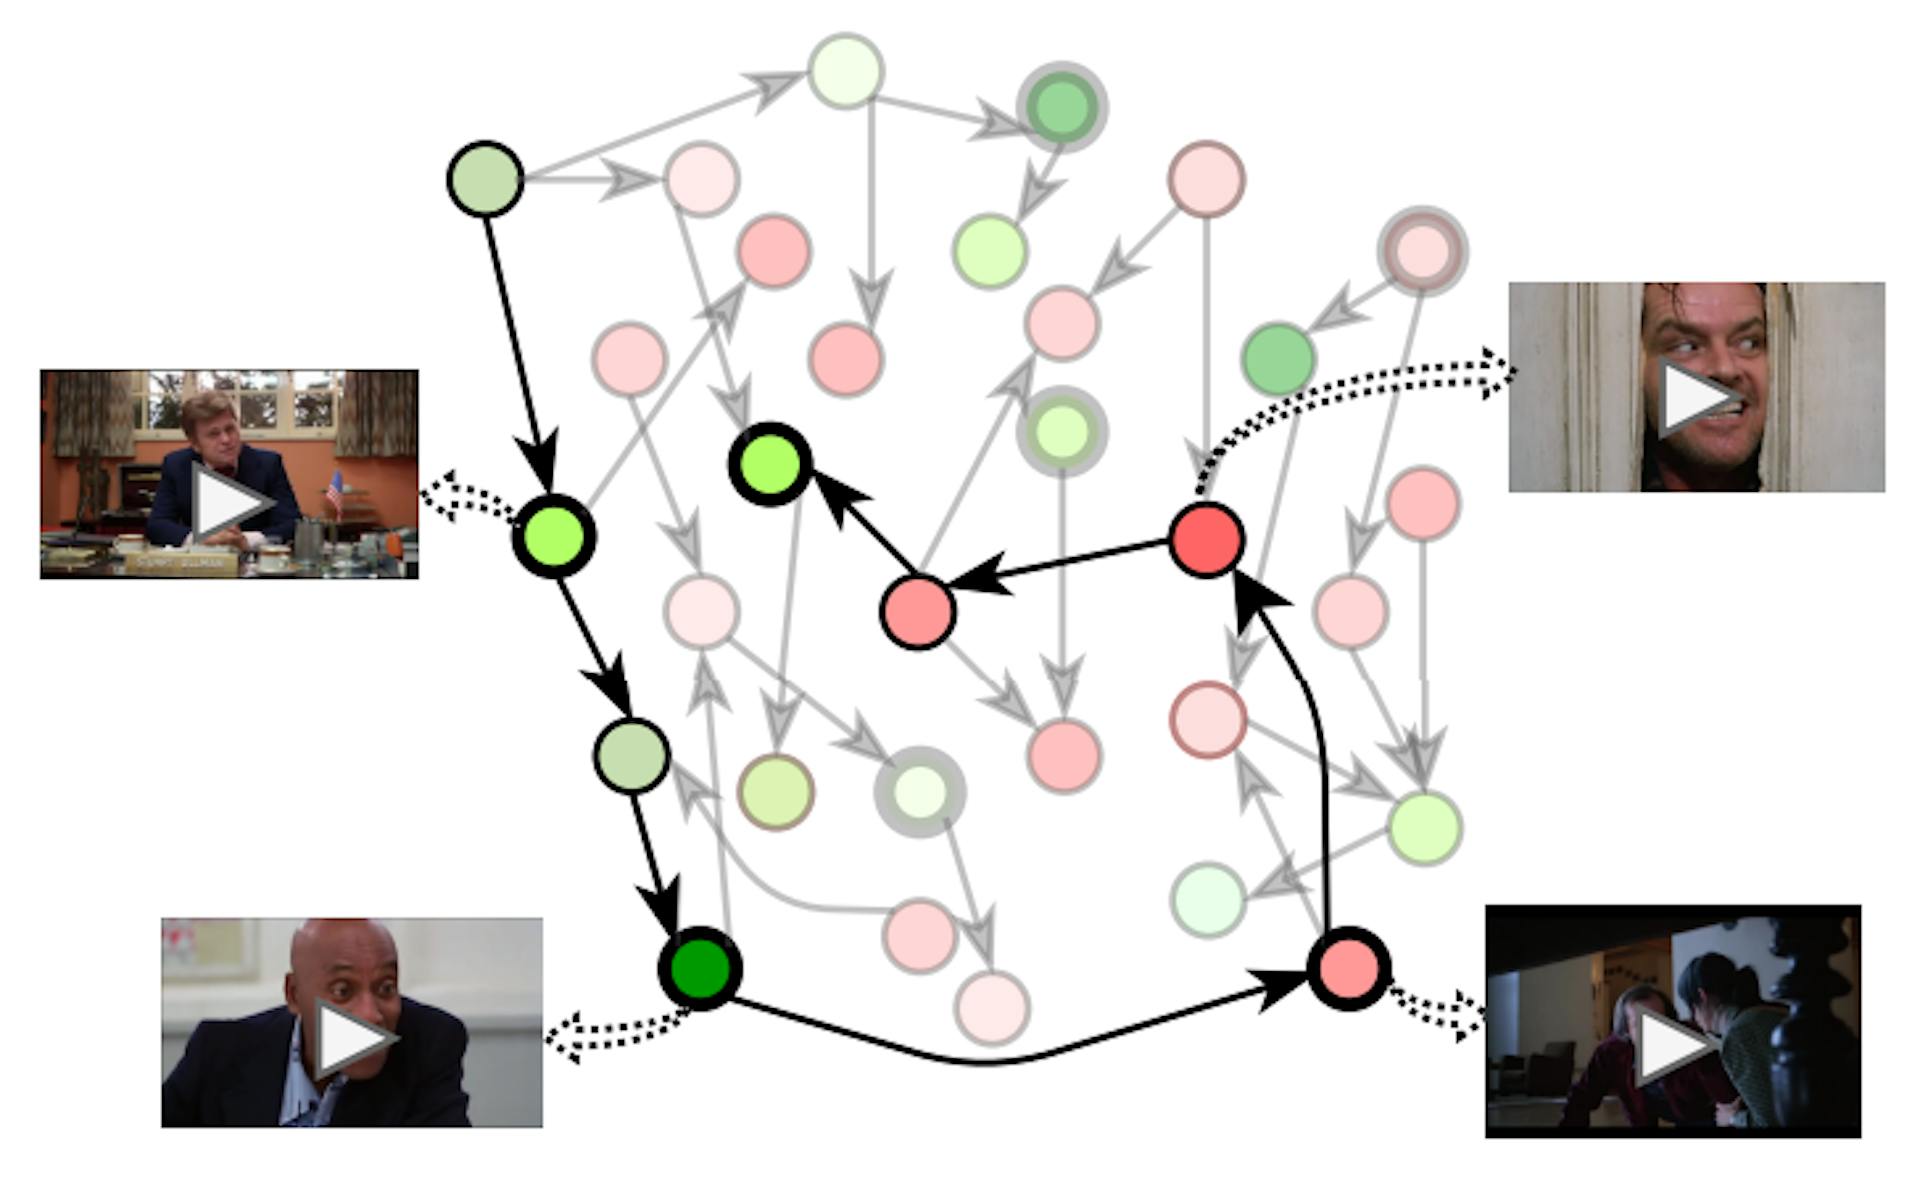 图 2. GRAPHTRAILER：电影是一个图，其节点是镜头，边表示它们之间的关系。每个镜头都由情绪分数（绿色/红色阴影表示正值/负值）和描述重要事件的标签（粗圆圈）来表征。我们的算法在图中执行遍历（粗线）以生成提案预告片序列。